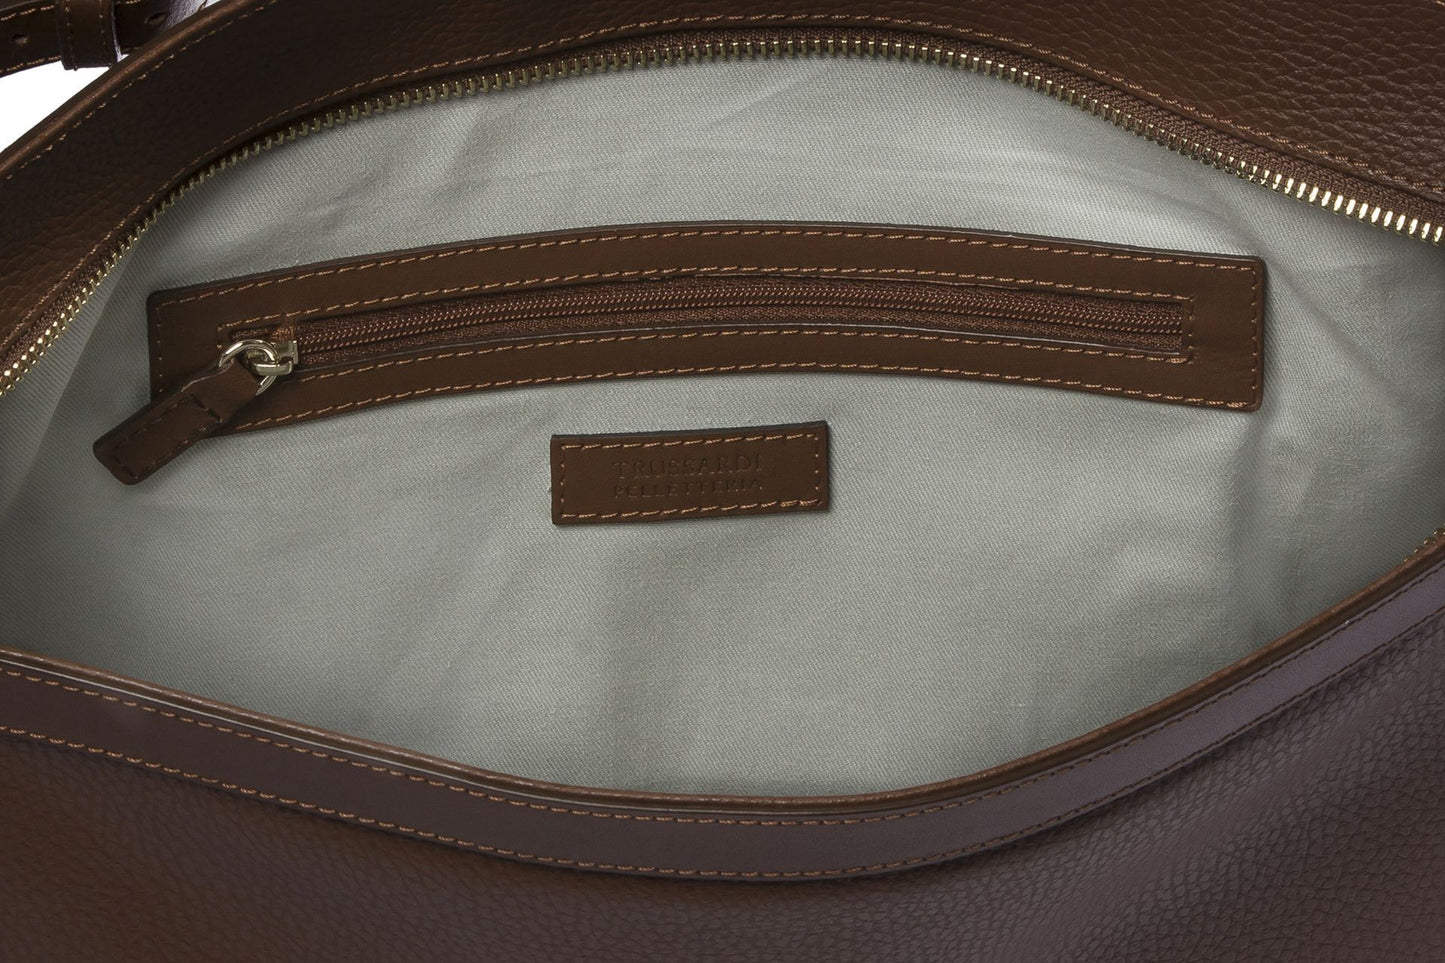 Elegant Embossed Leather Shoulder Bag